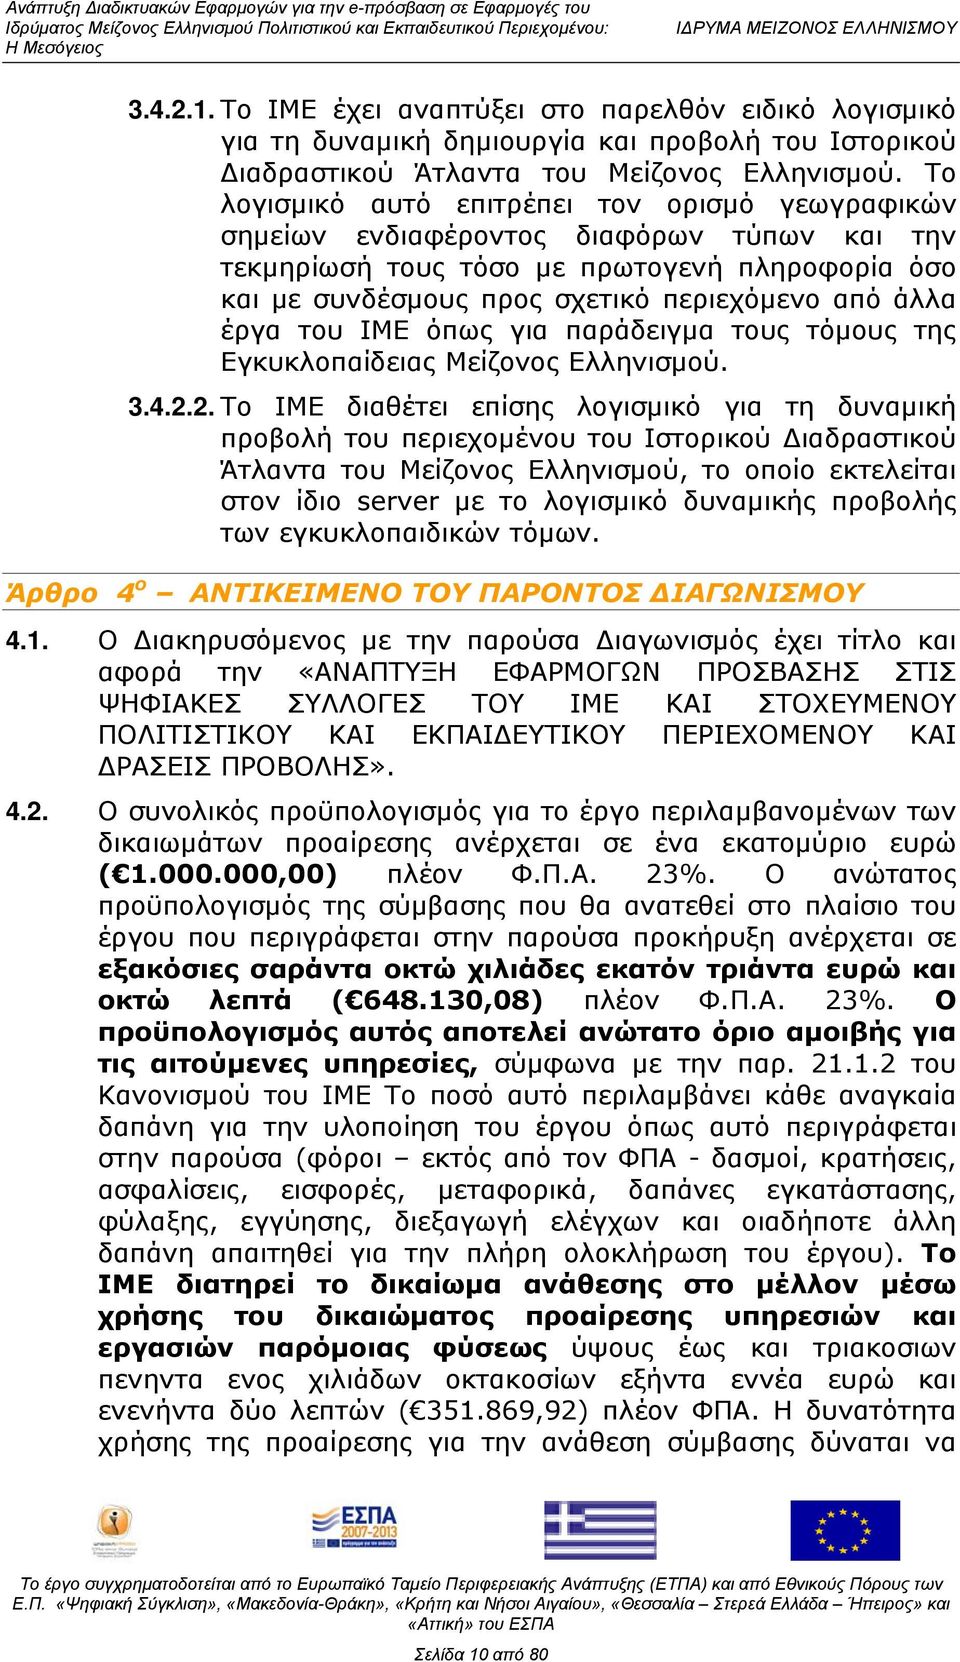 έργα του ΙΜΕ όπως για παράδειγμα τους τόμους της Εγκυκλοπαίδειας Μείζονος Ελληνισμού. 3.4.2.